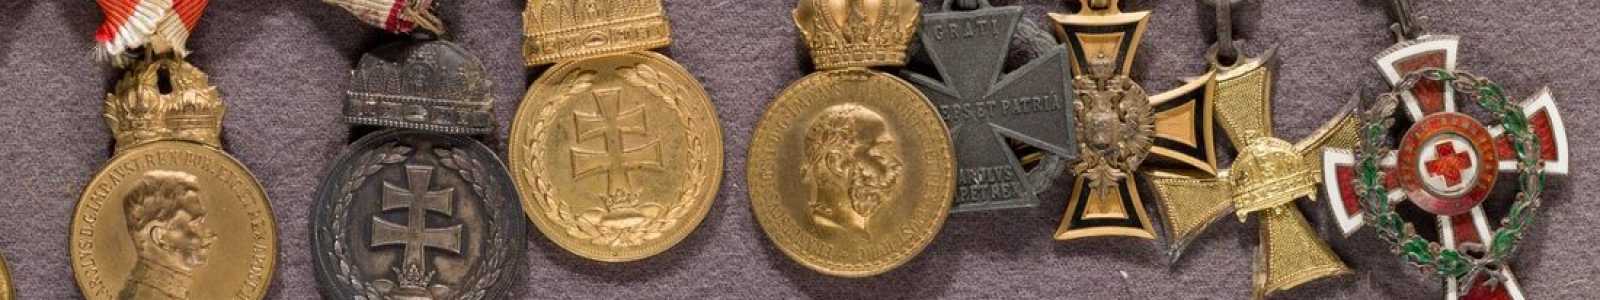 A82m - Коллекционные медали и предметы военной истории